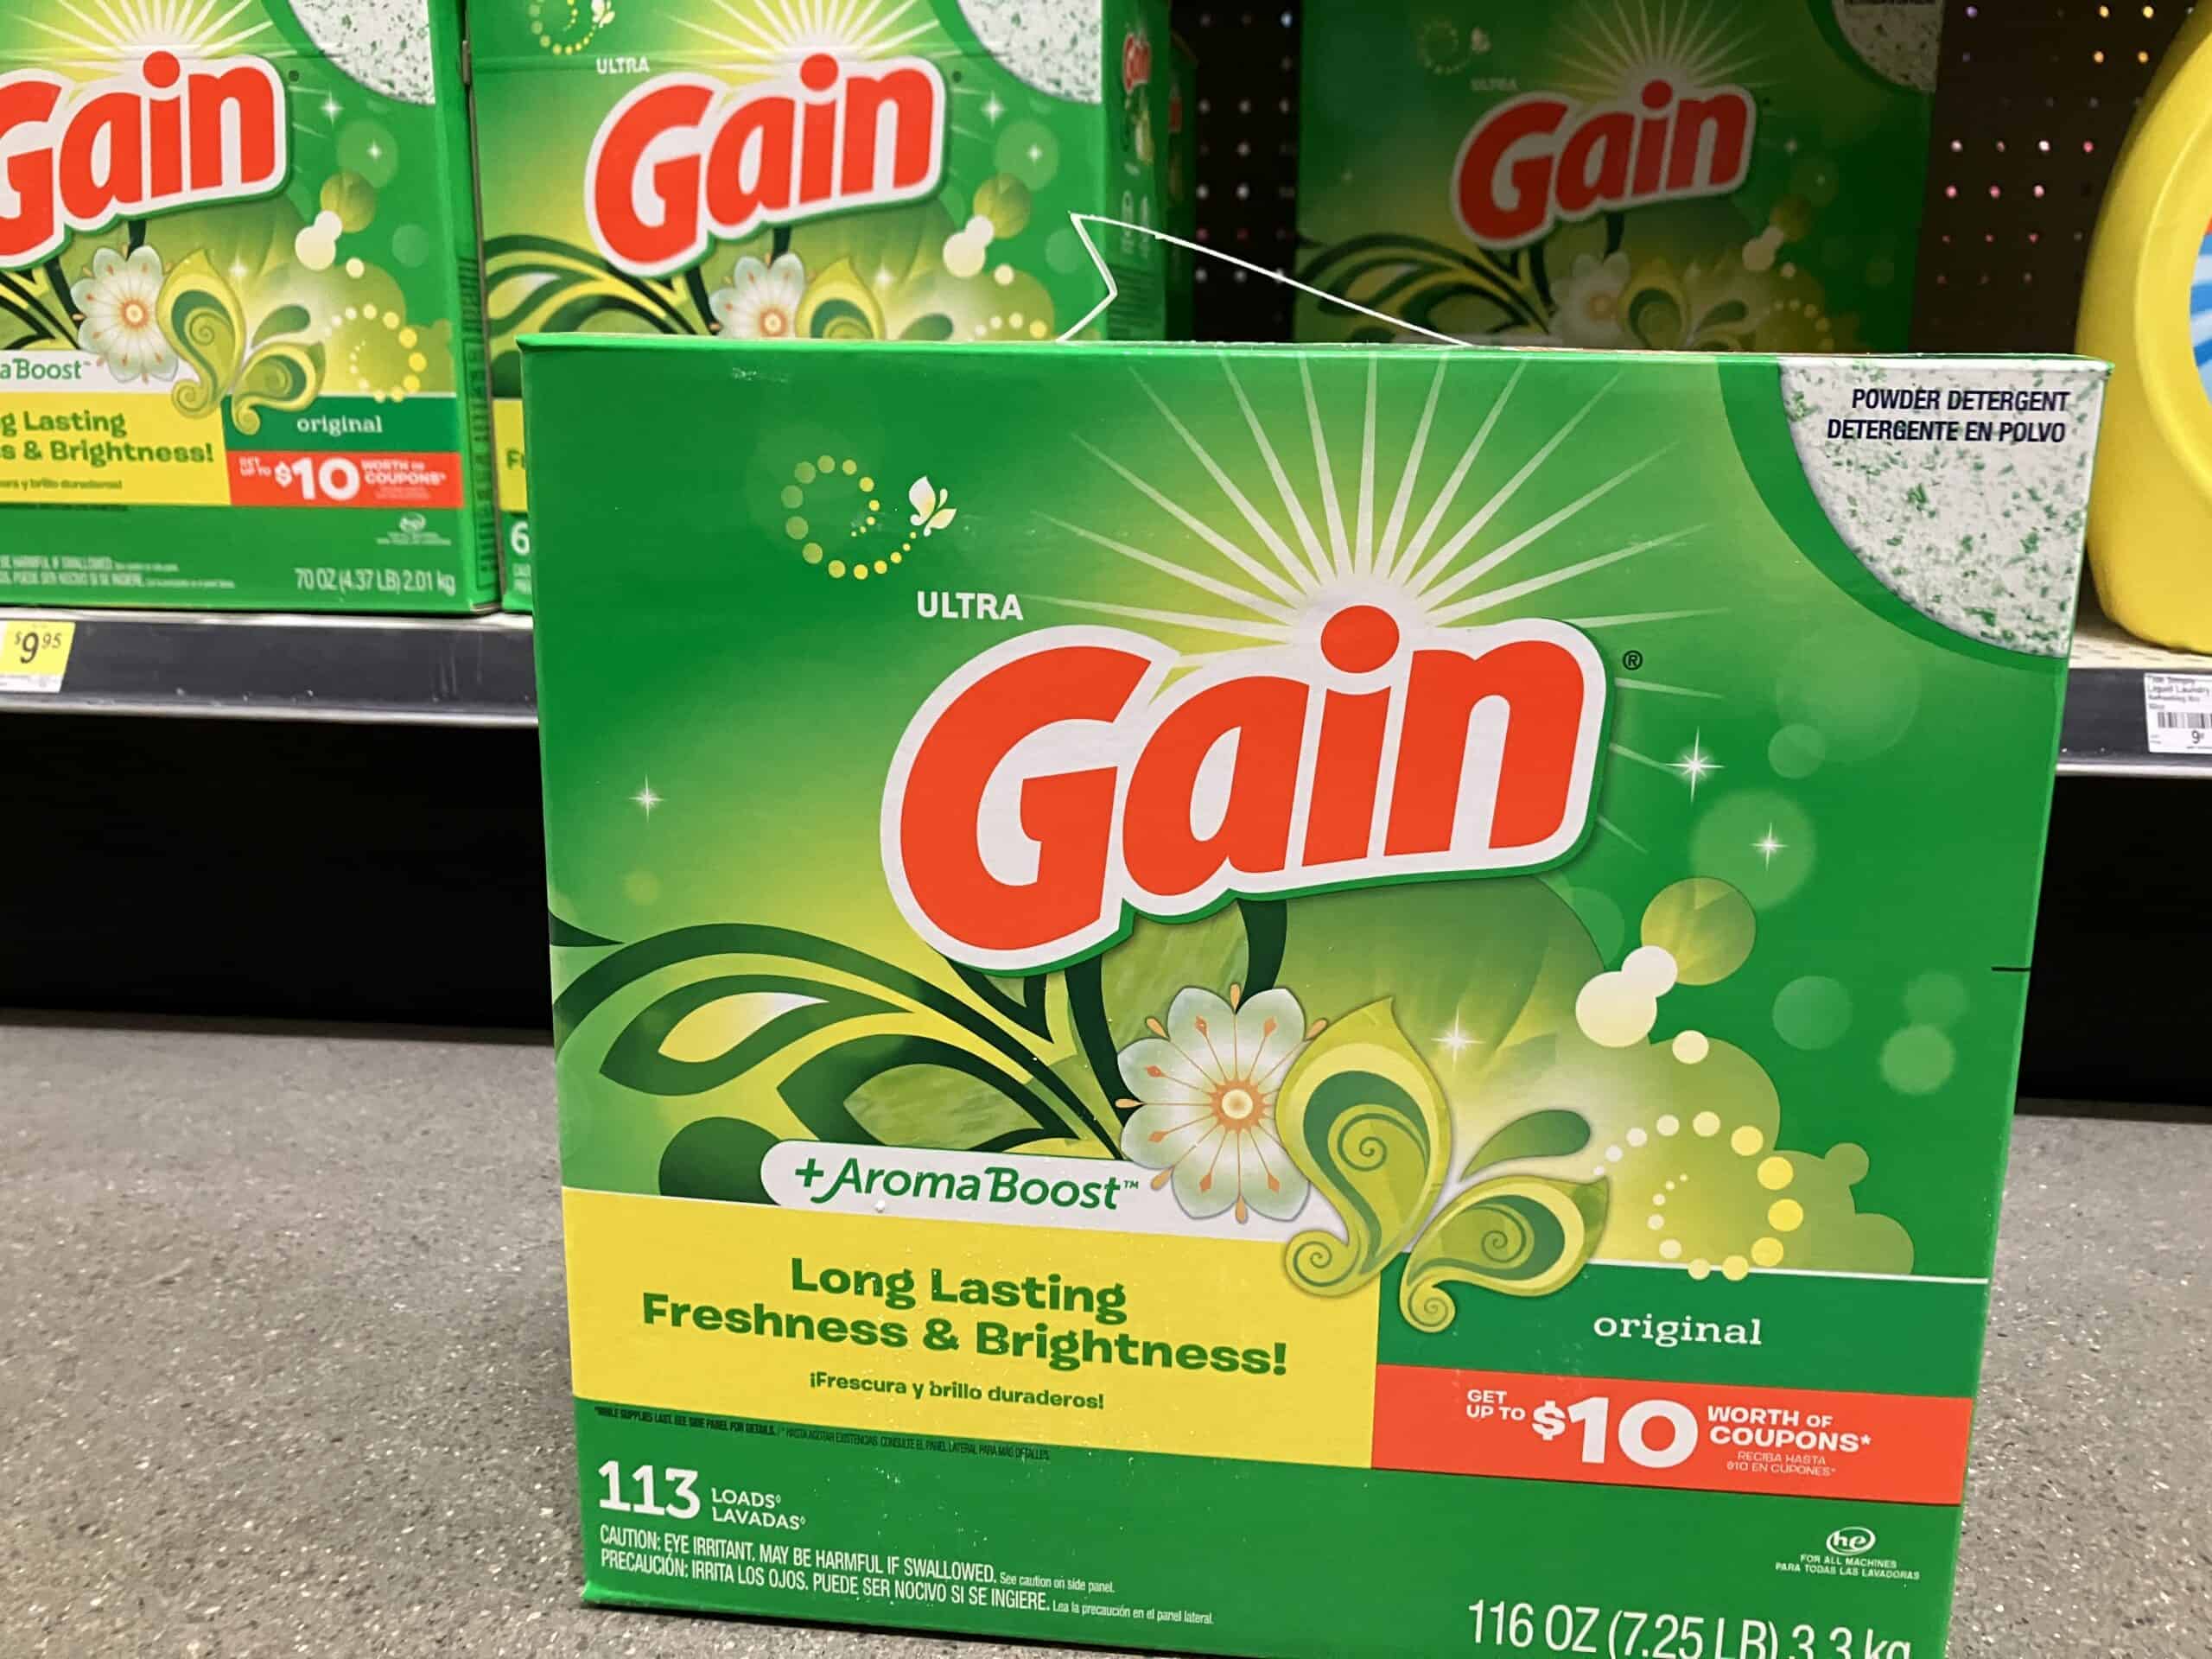 Gain powder laundry detergent